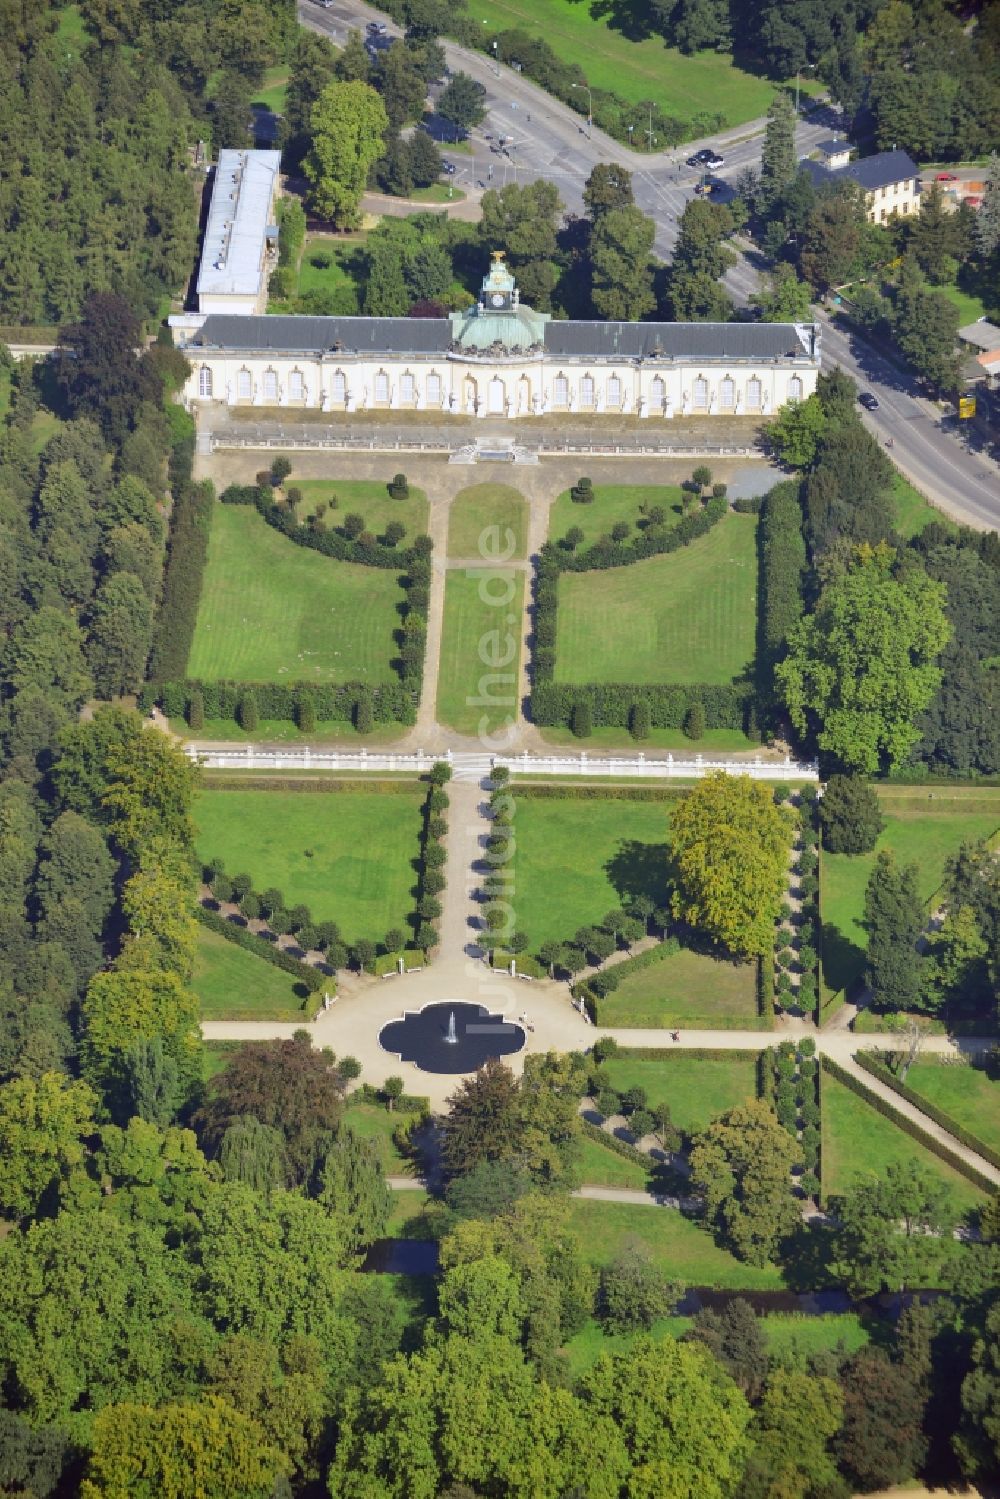 Potsdam von oben - Schloss Sanssouci und Weinbergterrassen in Potsdam im Bundesland Brandenburg